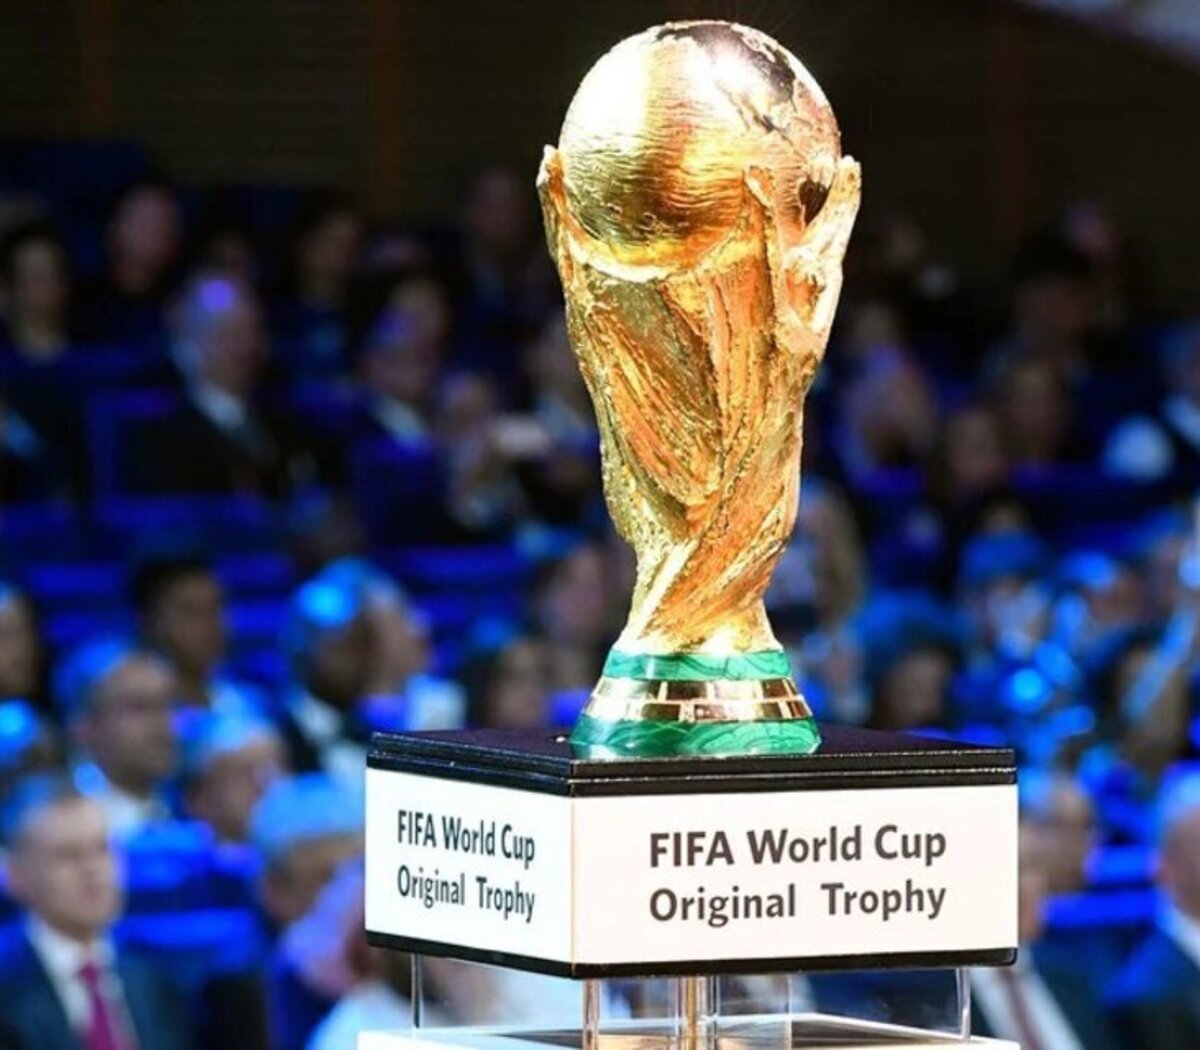 Así se ve la Copa del Mundo con el nombre de Argentina grabado